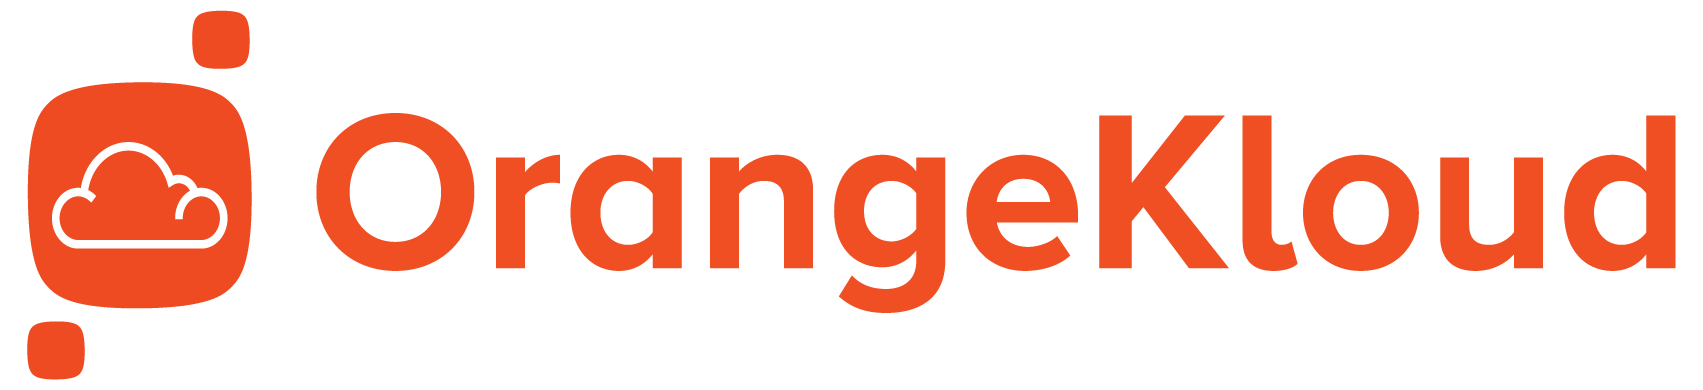 Orangekloud Customer Self Ordering App - Orangekloud Pte Ltd